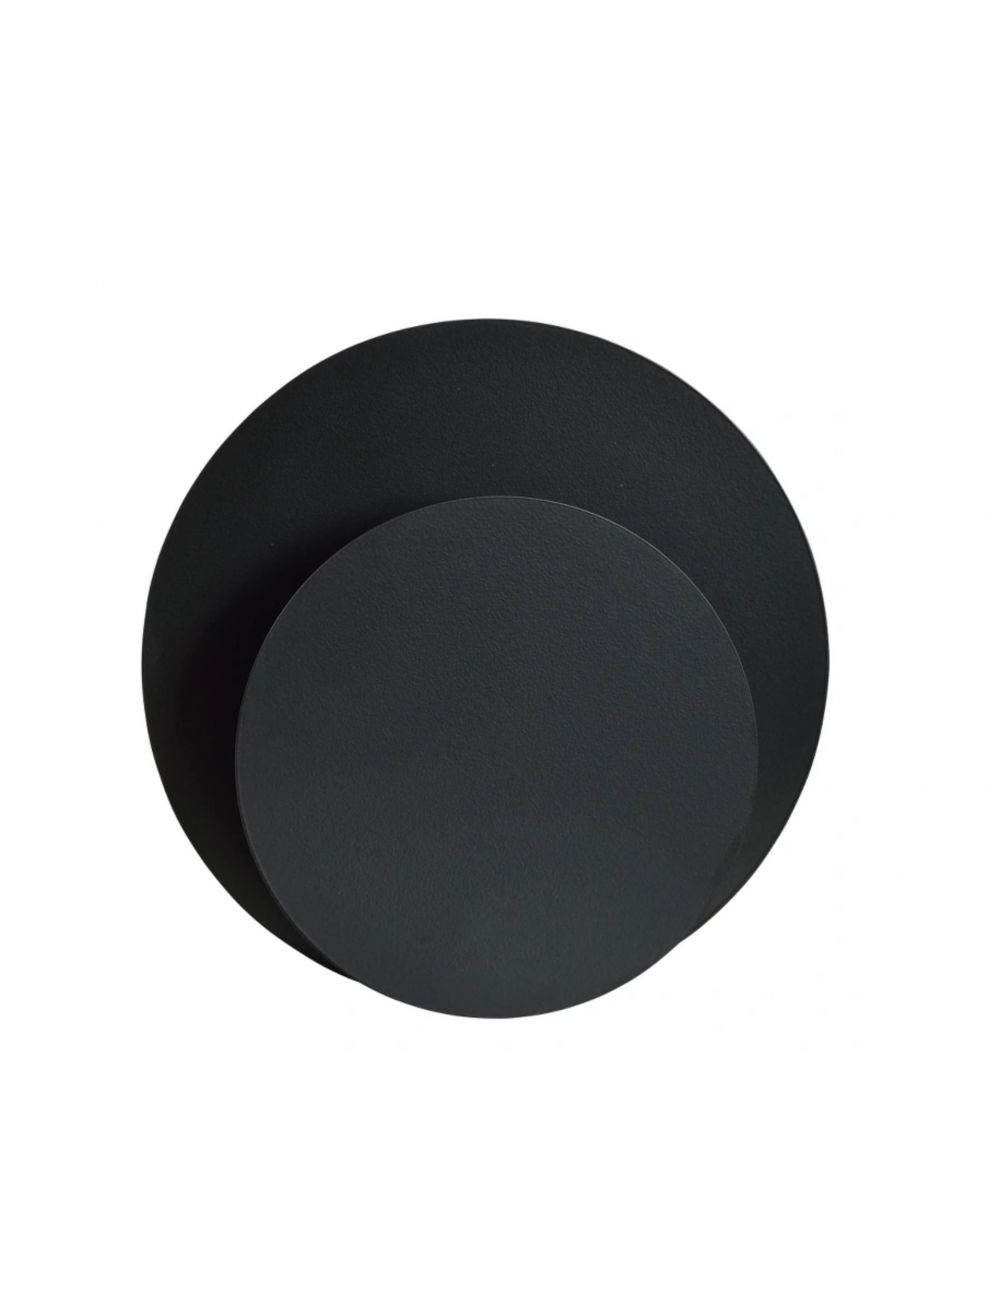 IDEA K1 BLACK 792/K1 czarny nowoczesny kinkiet DESIGN metalowy do LOFT pomieszczeń EMIBIG